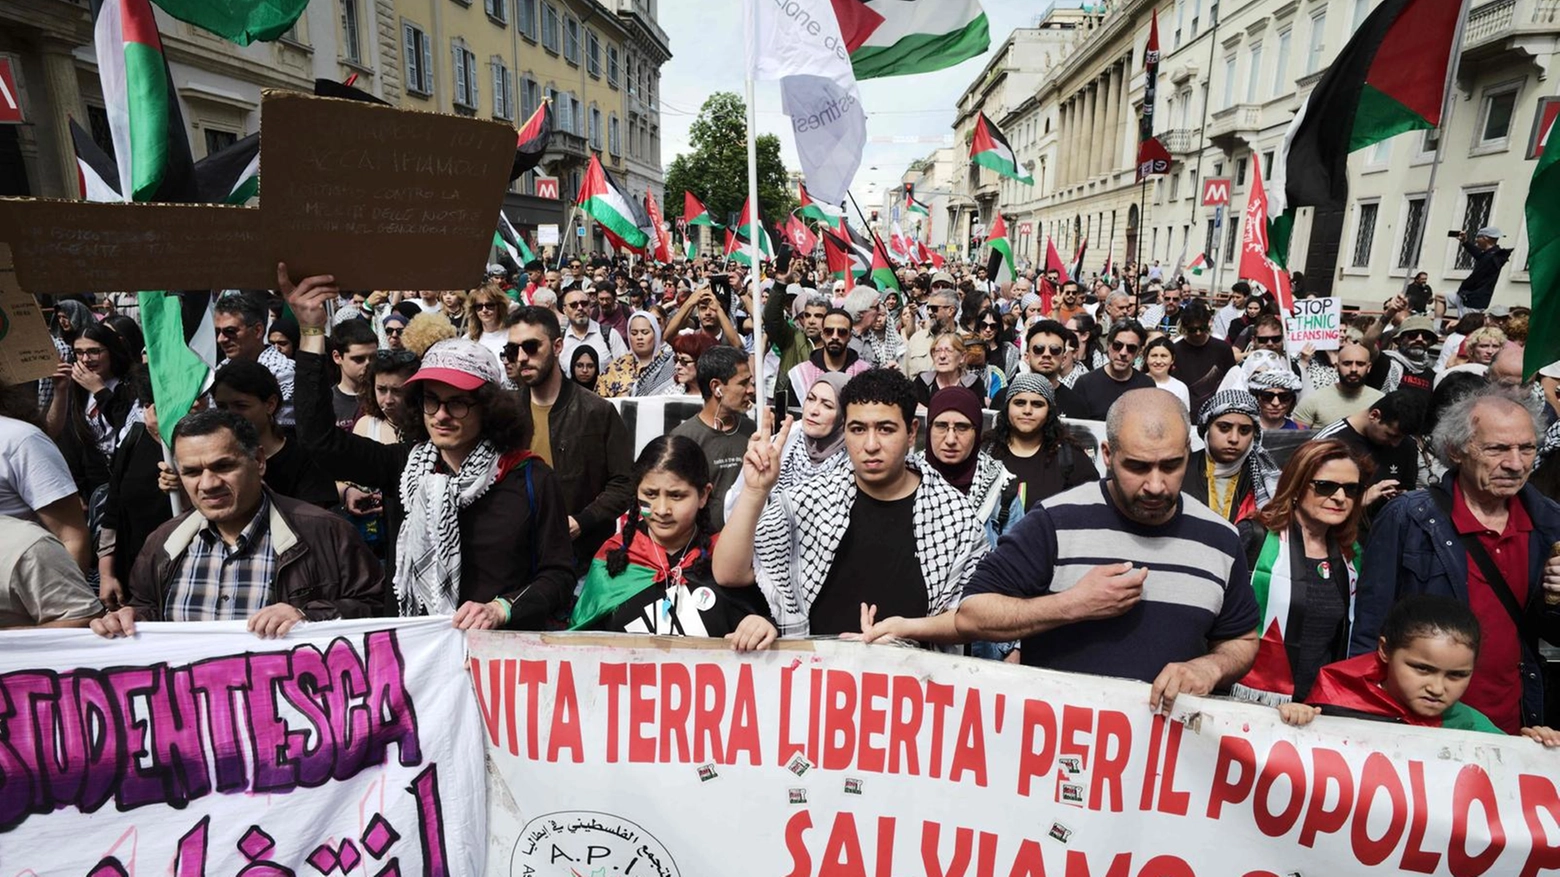 A Milano, dall’inizio dell’offensiva israeliana, è la 31esima manifestazione contro il governo di Tel Aviv. A organizzarla associazioni e comunità palestinesi con la partecipazione dei centri sociali